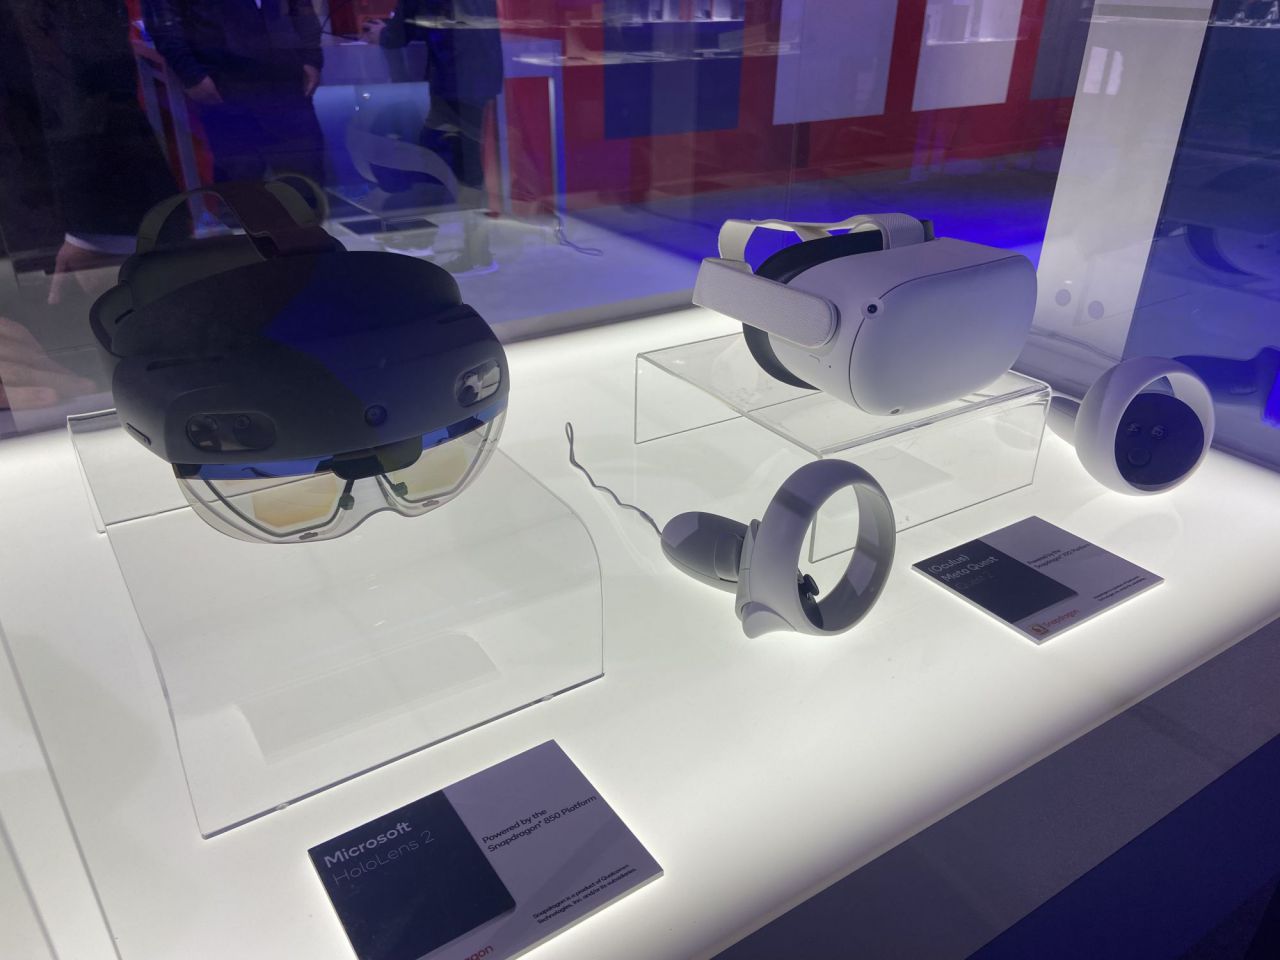 Dispositivos RV, AR, XR Qualcomm en el stand del MWC 2022